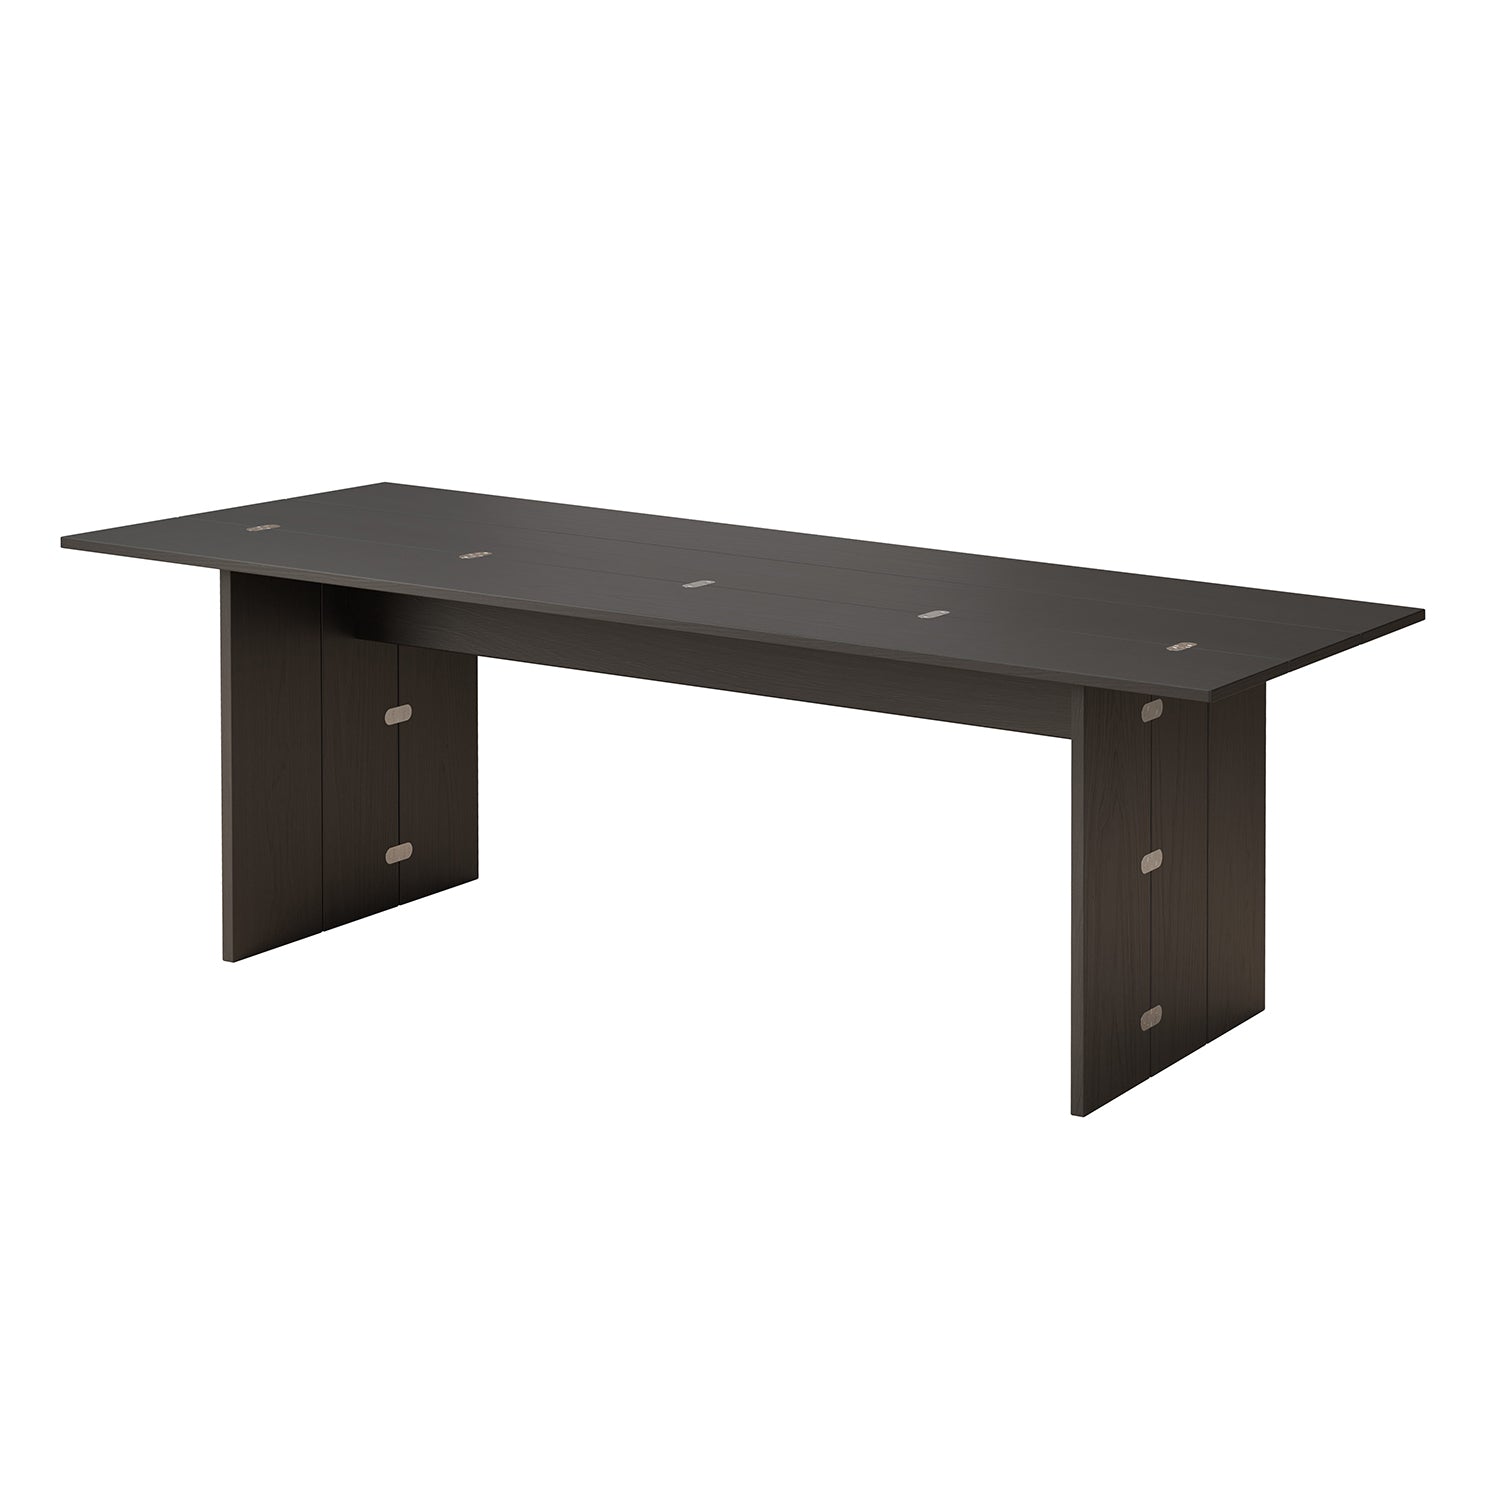 Flip Table XL - The Design Choice